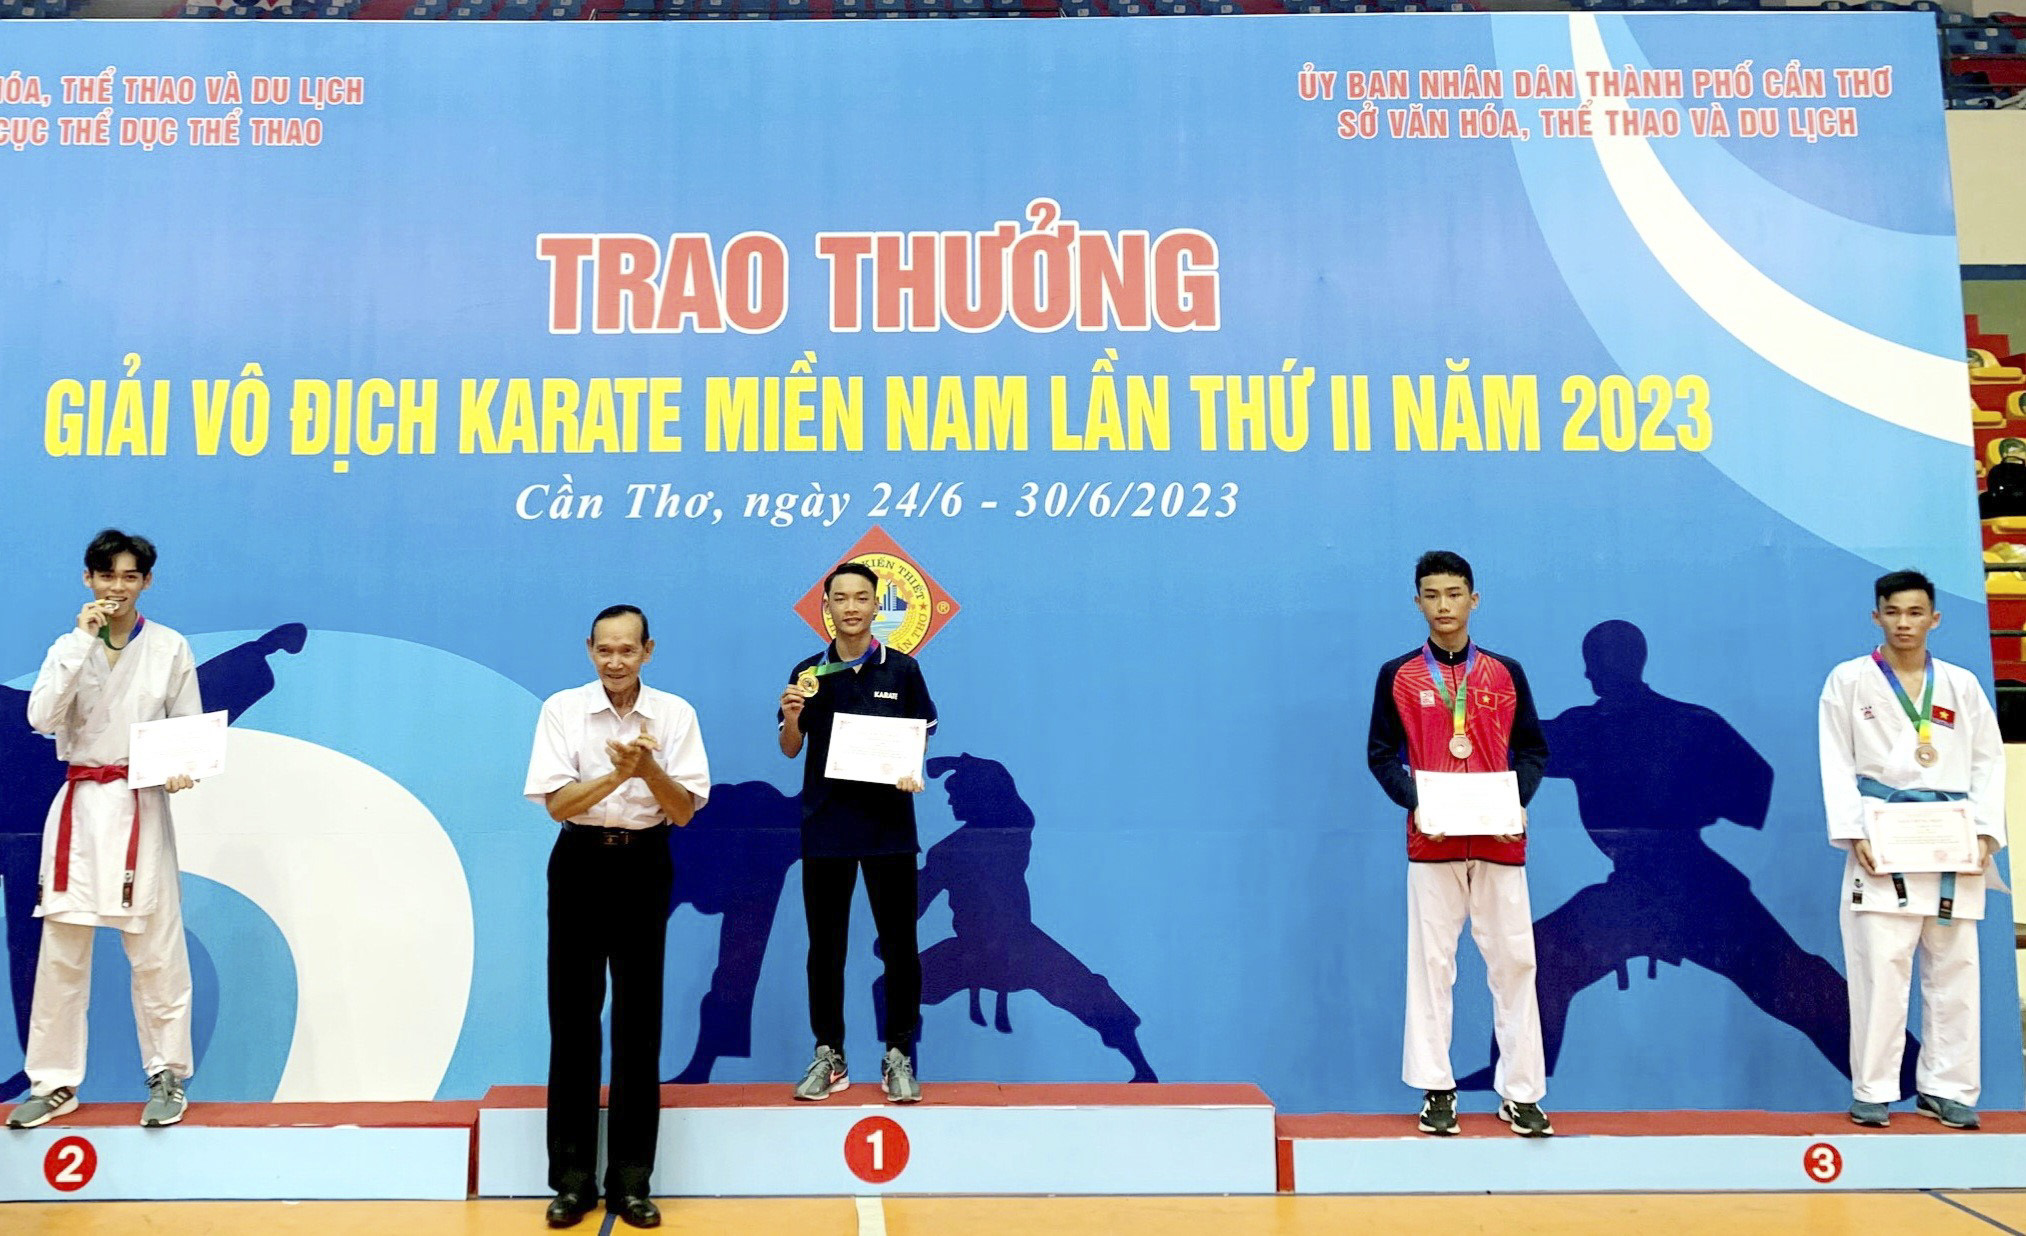 VĐV Nguyễn Anh Tuấn (HCV hạng cân 60kg, lứa tuổi 15-17 tuổi).